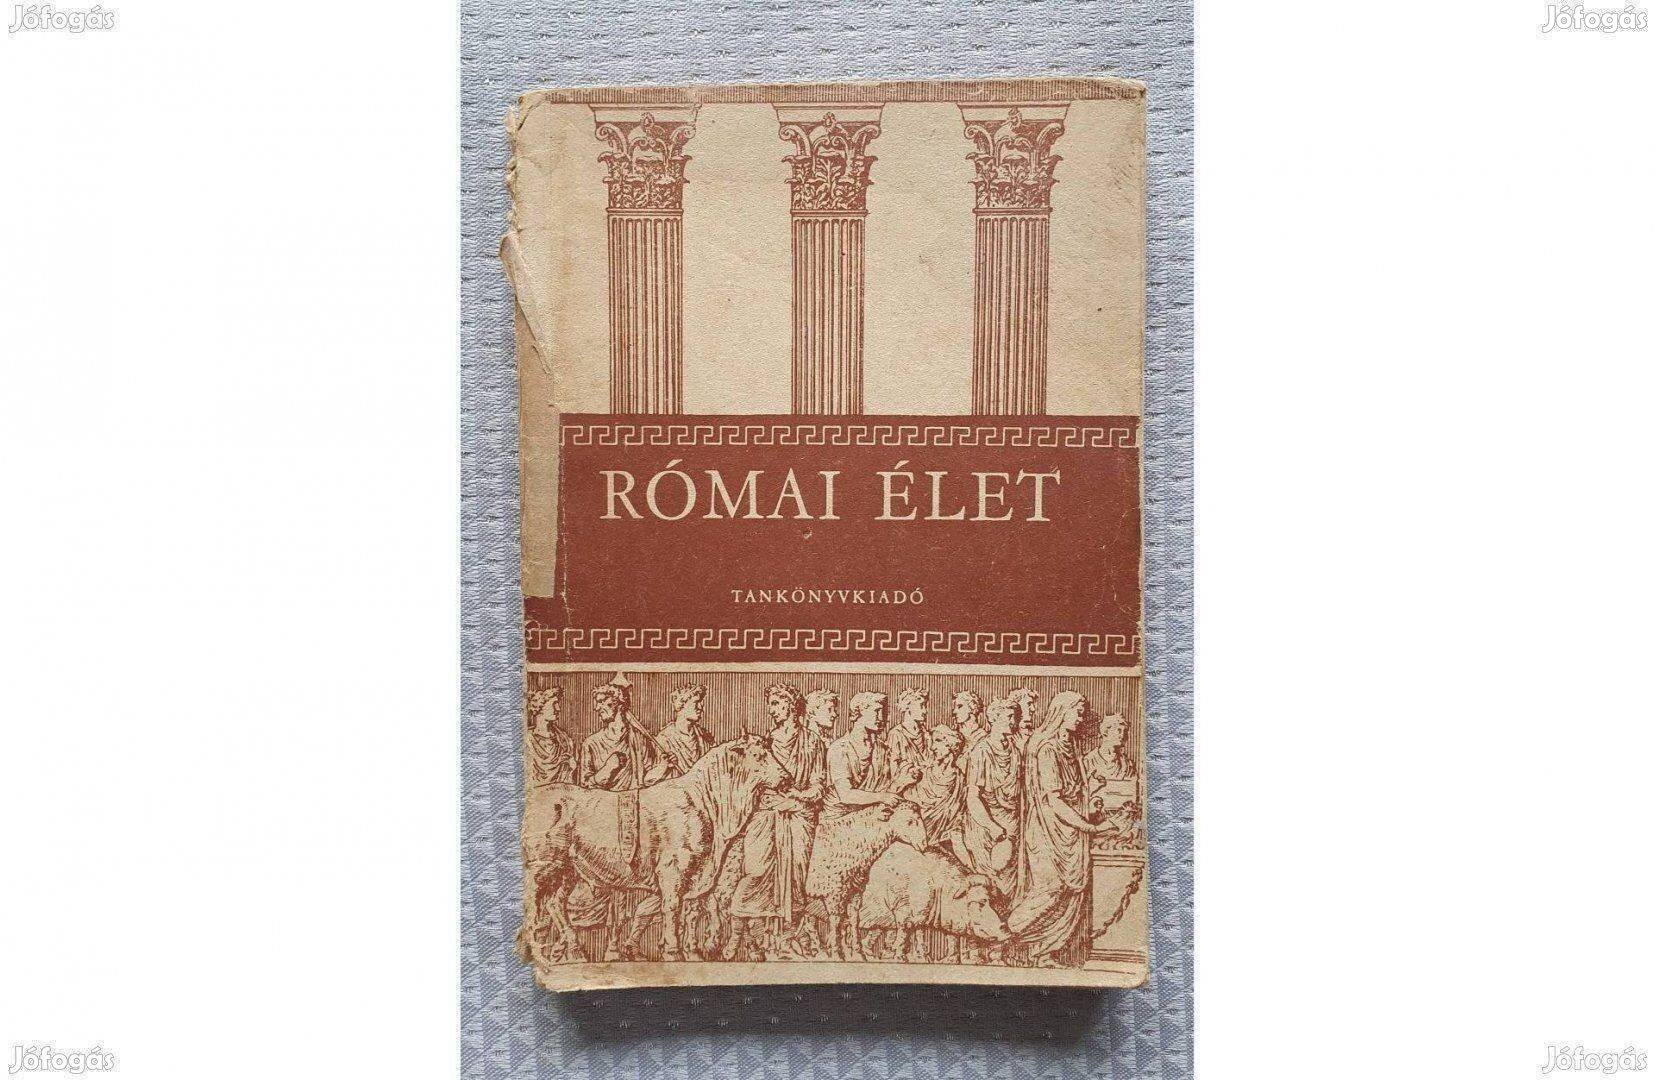 Római élet 1958 tankönyv